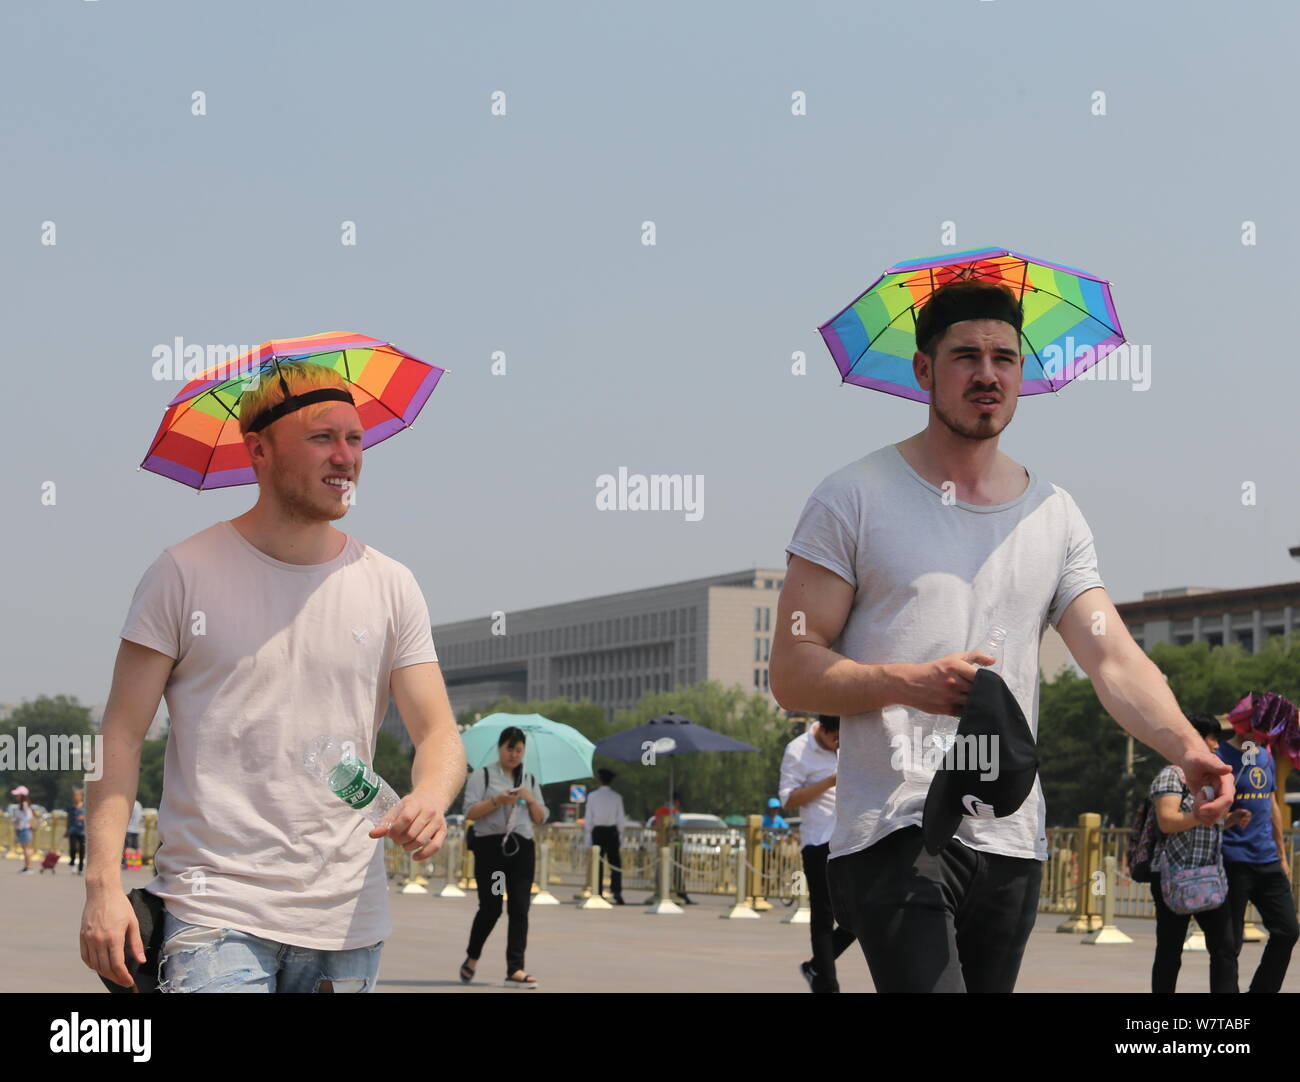 I turisti stranieri proteggersi con cappelli dal sole cocente come visiteranno la Piazza Tian'anmen a Pechino, in Cina, il 20 maggio 2017. La Temperat Foto Stock